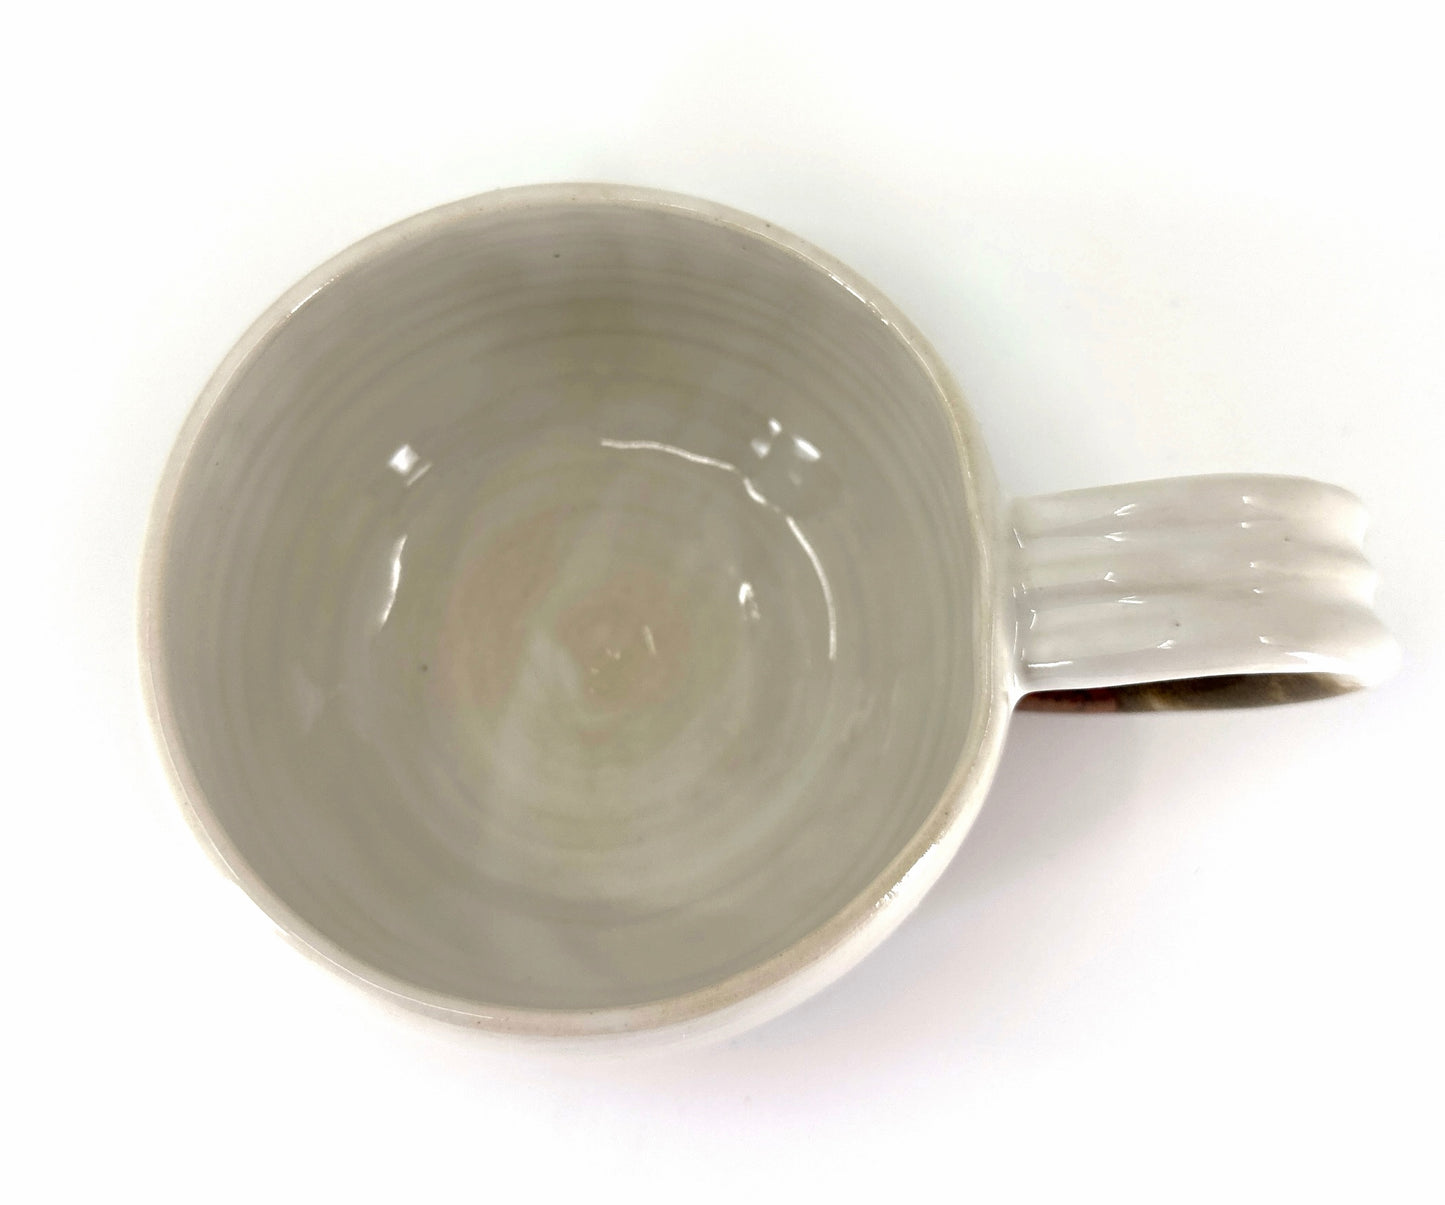 Cappuccino Mug - White Copper